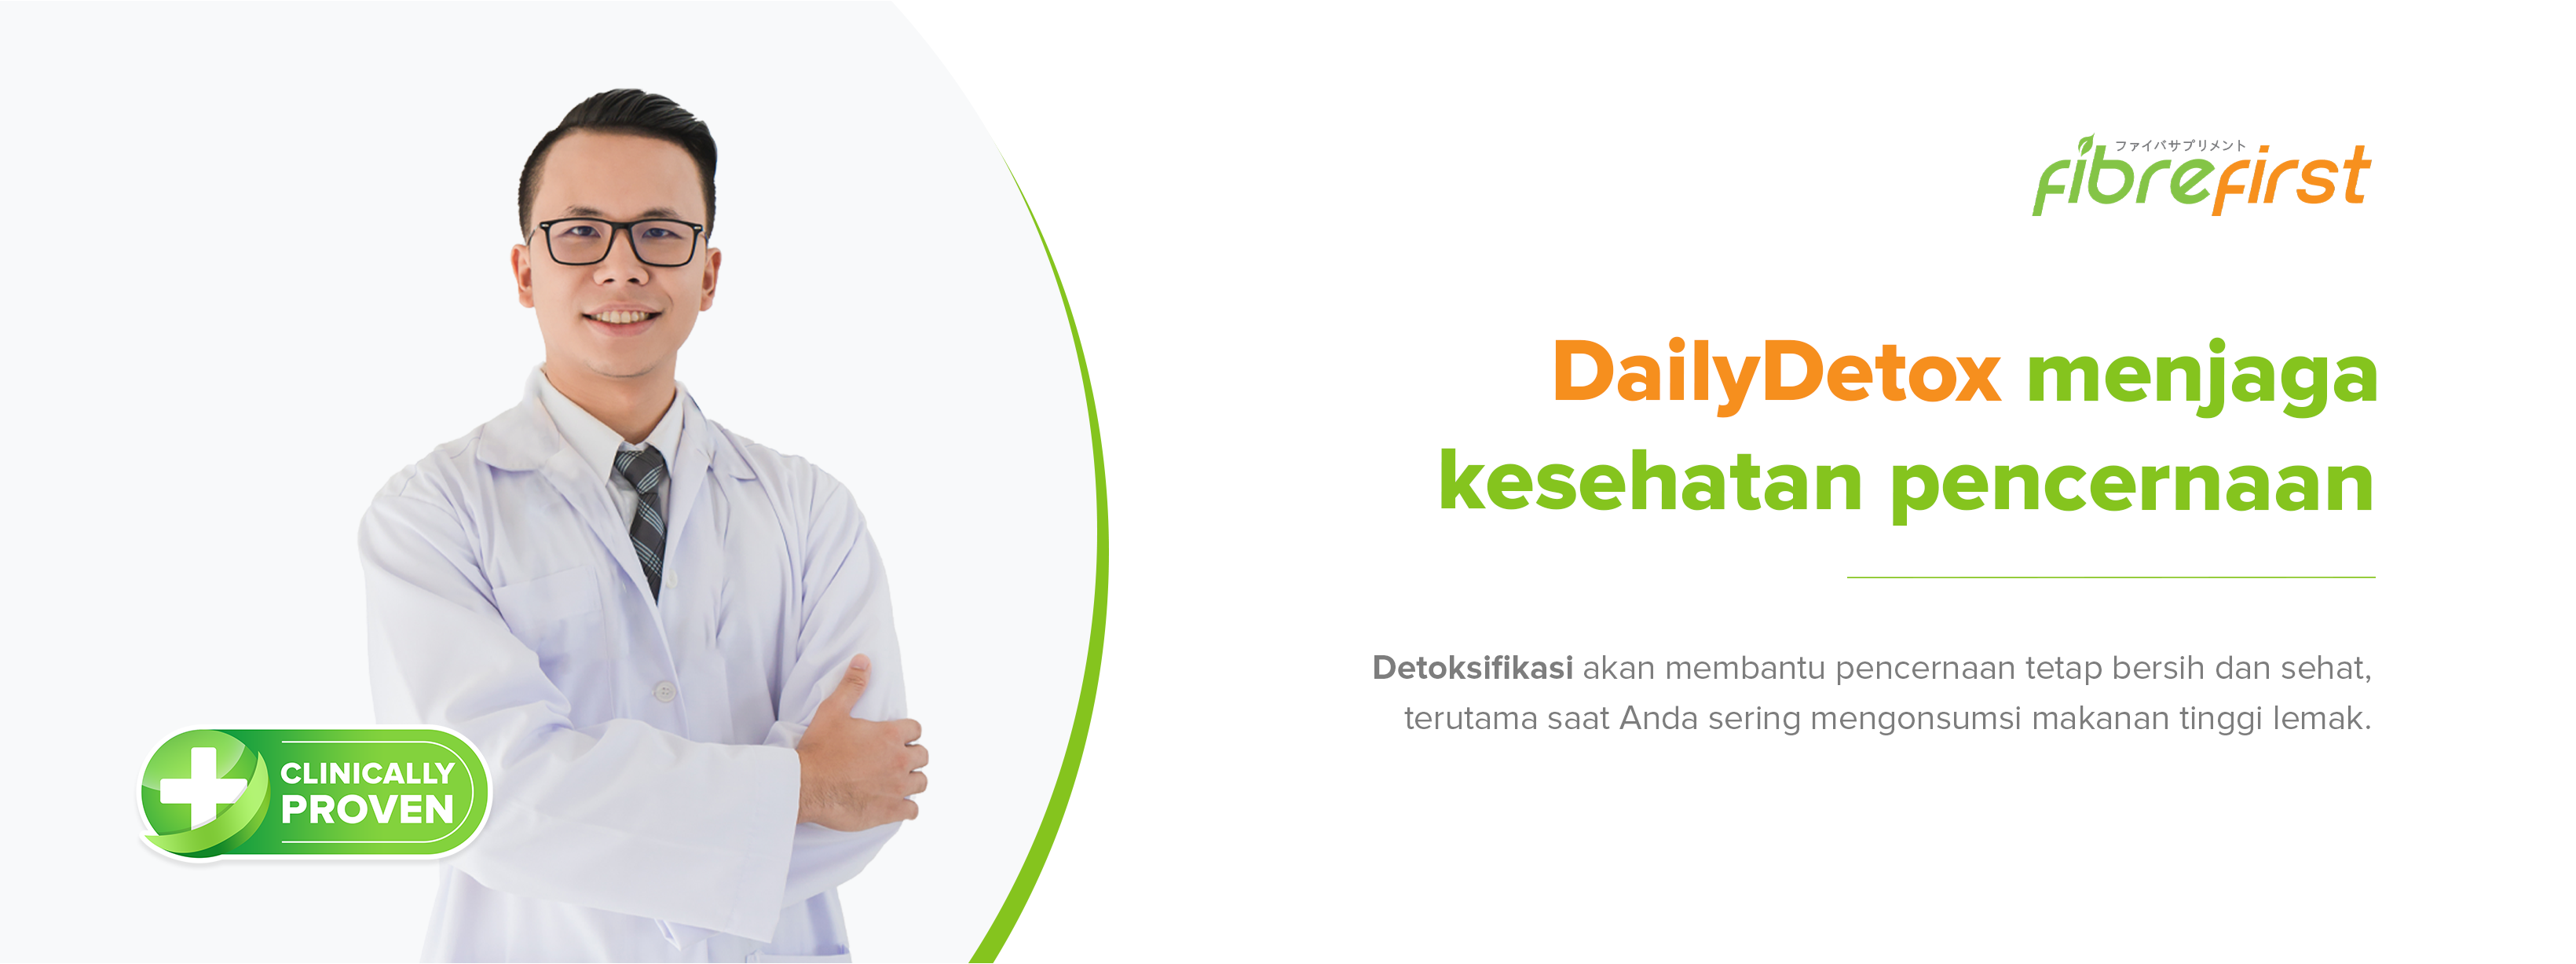 DailyDetox untuk meningkatkan kesehatan pencernaan